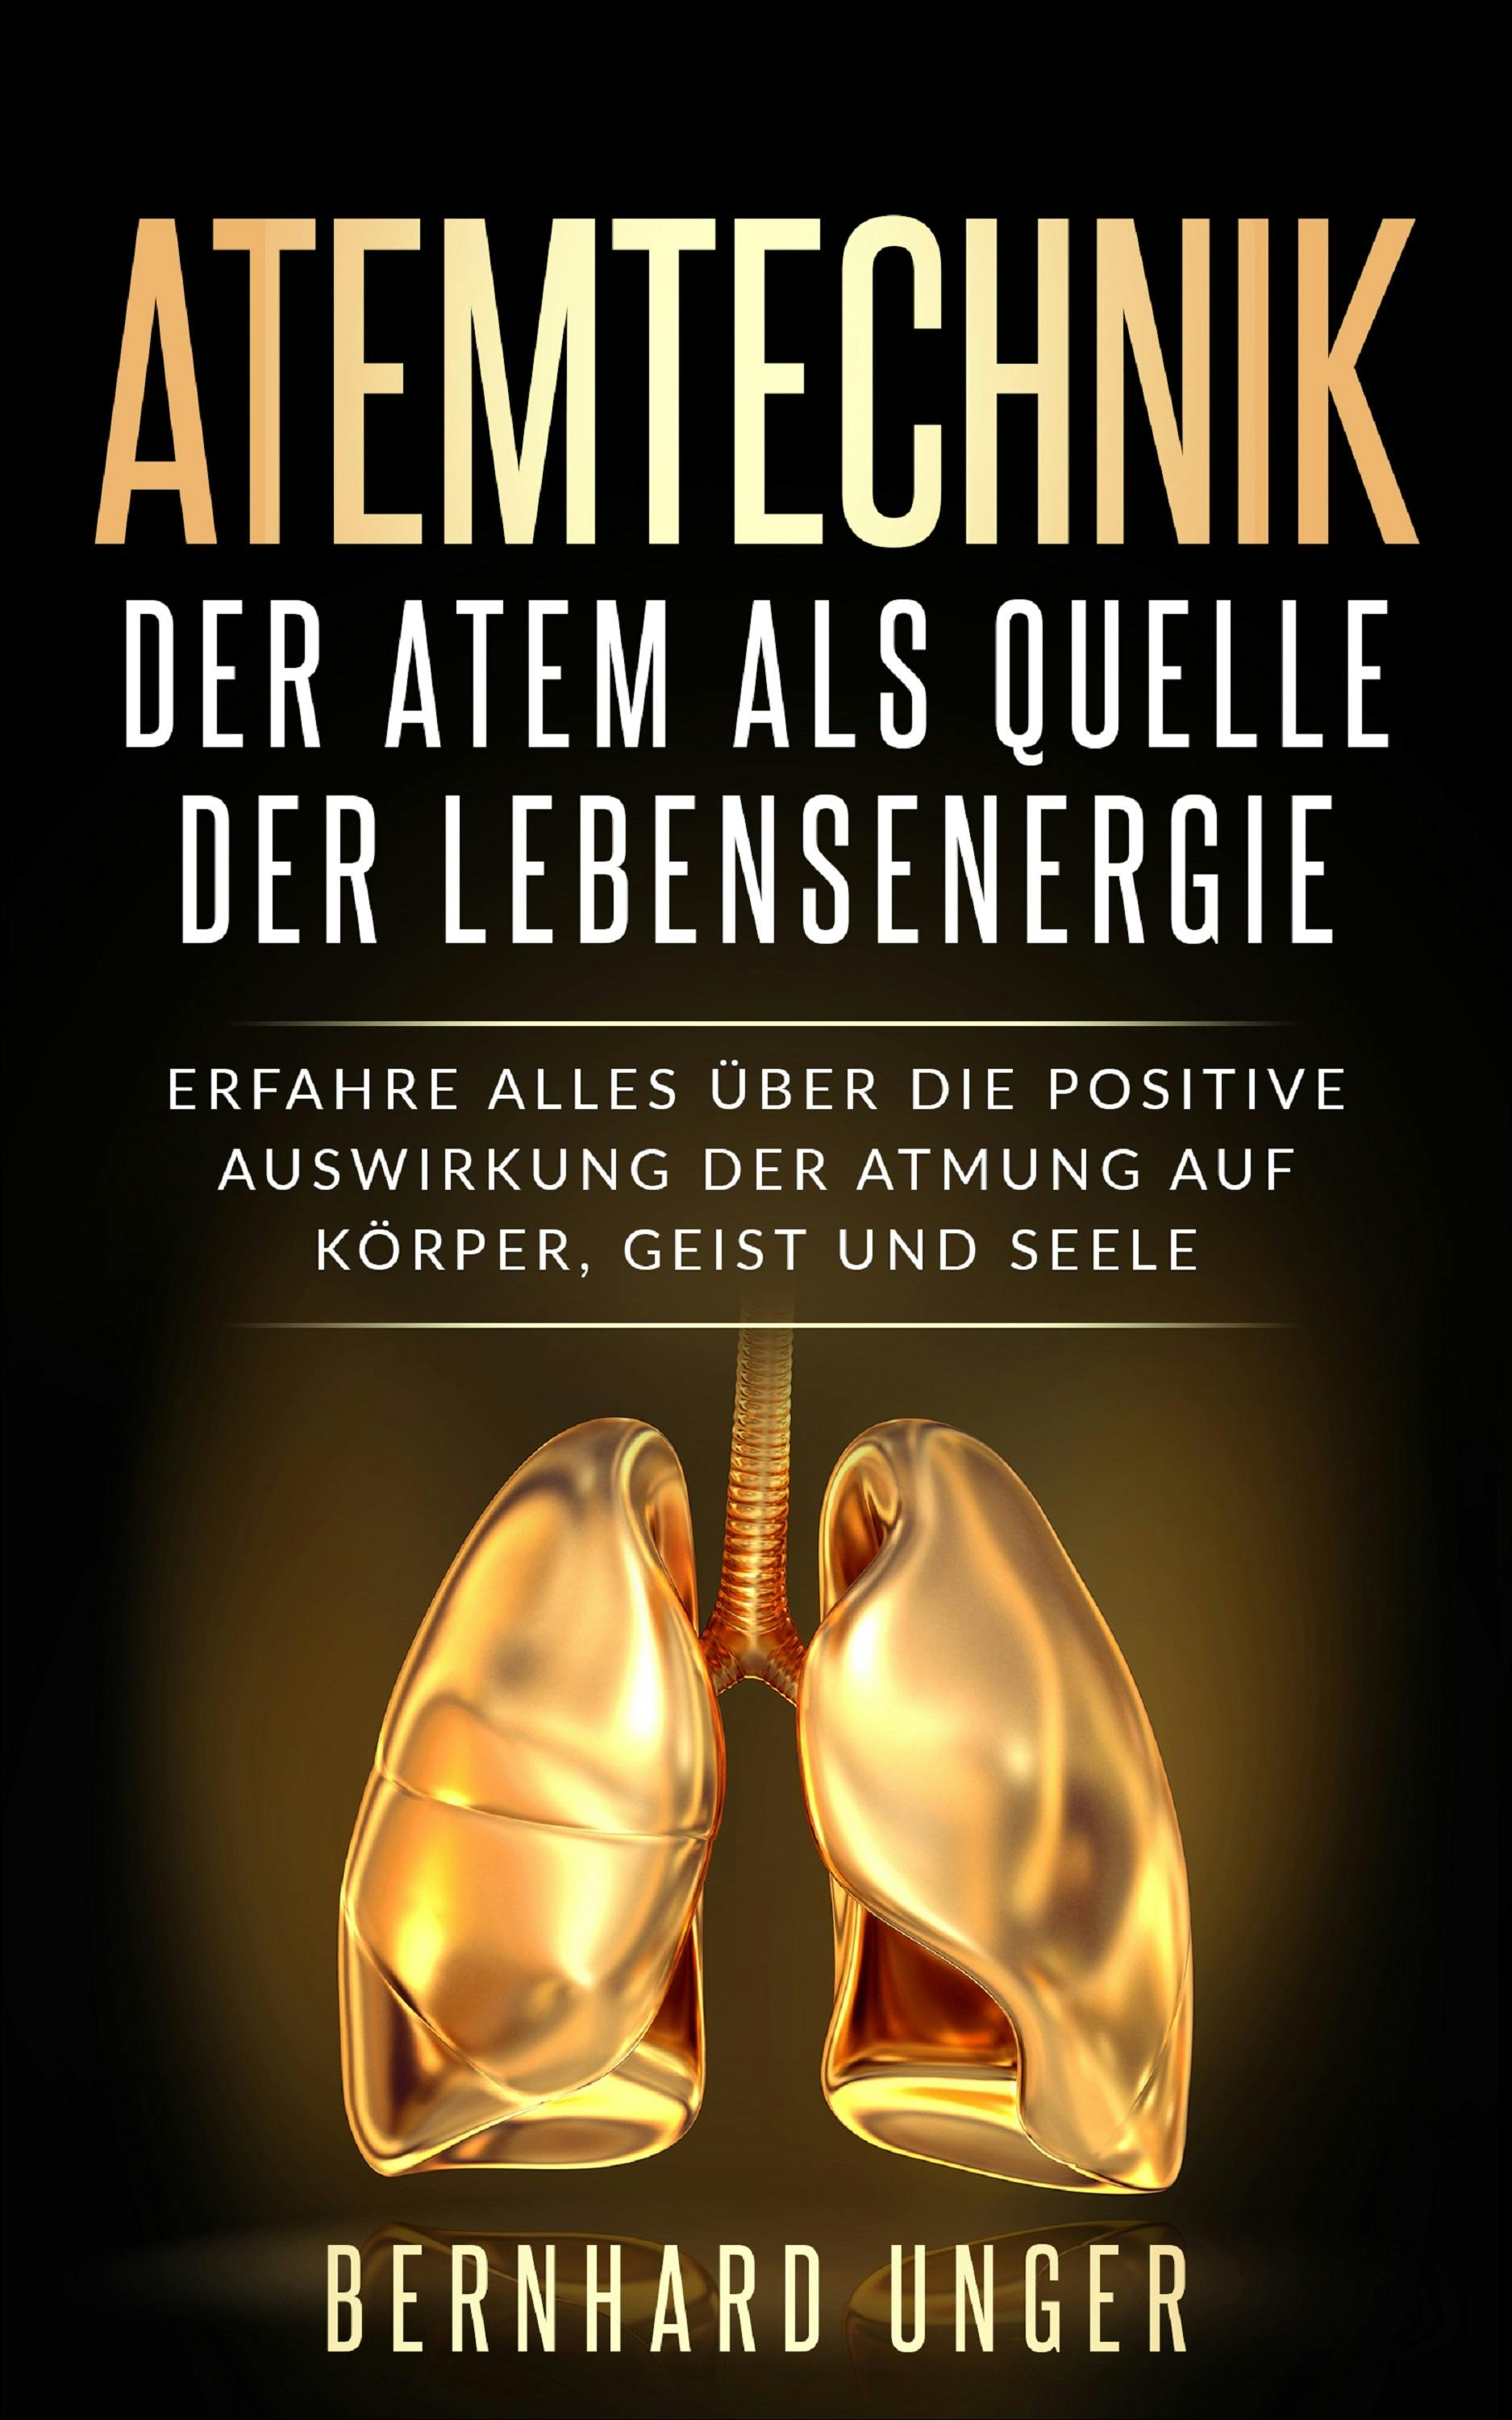 Atemtechnik-Der Atem als Quelle der Lebensenergie: Erfahre alles über die positive Auswirkung der Atmung auf Körper, Geist und Seele - Bernhard Unger